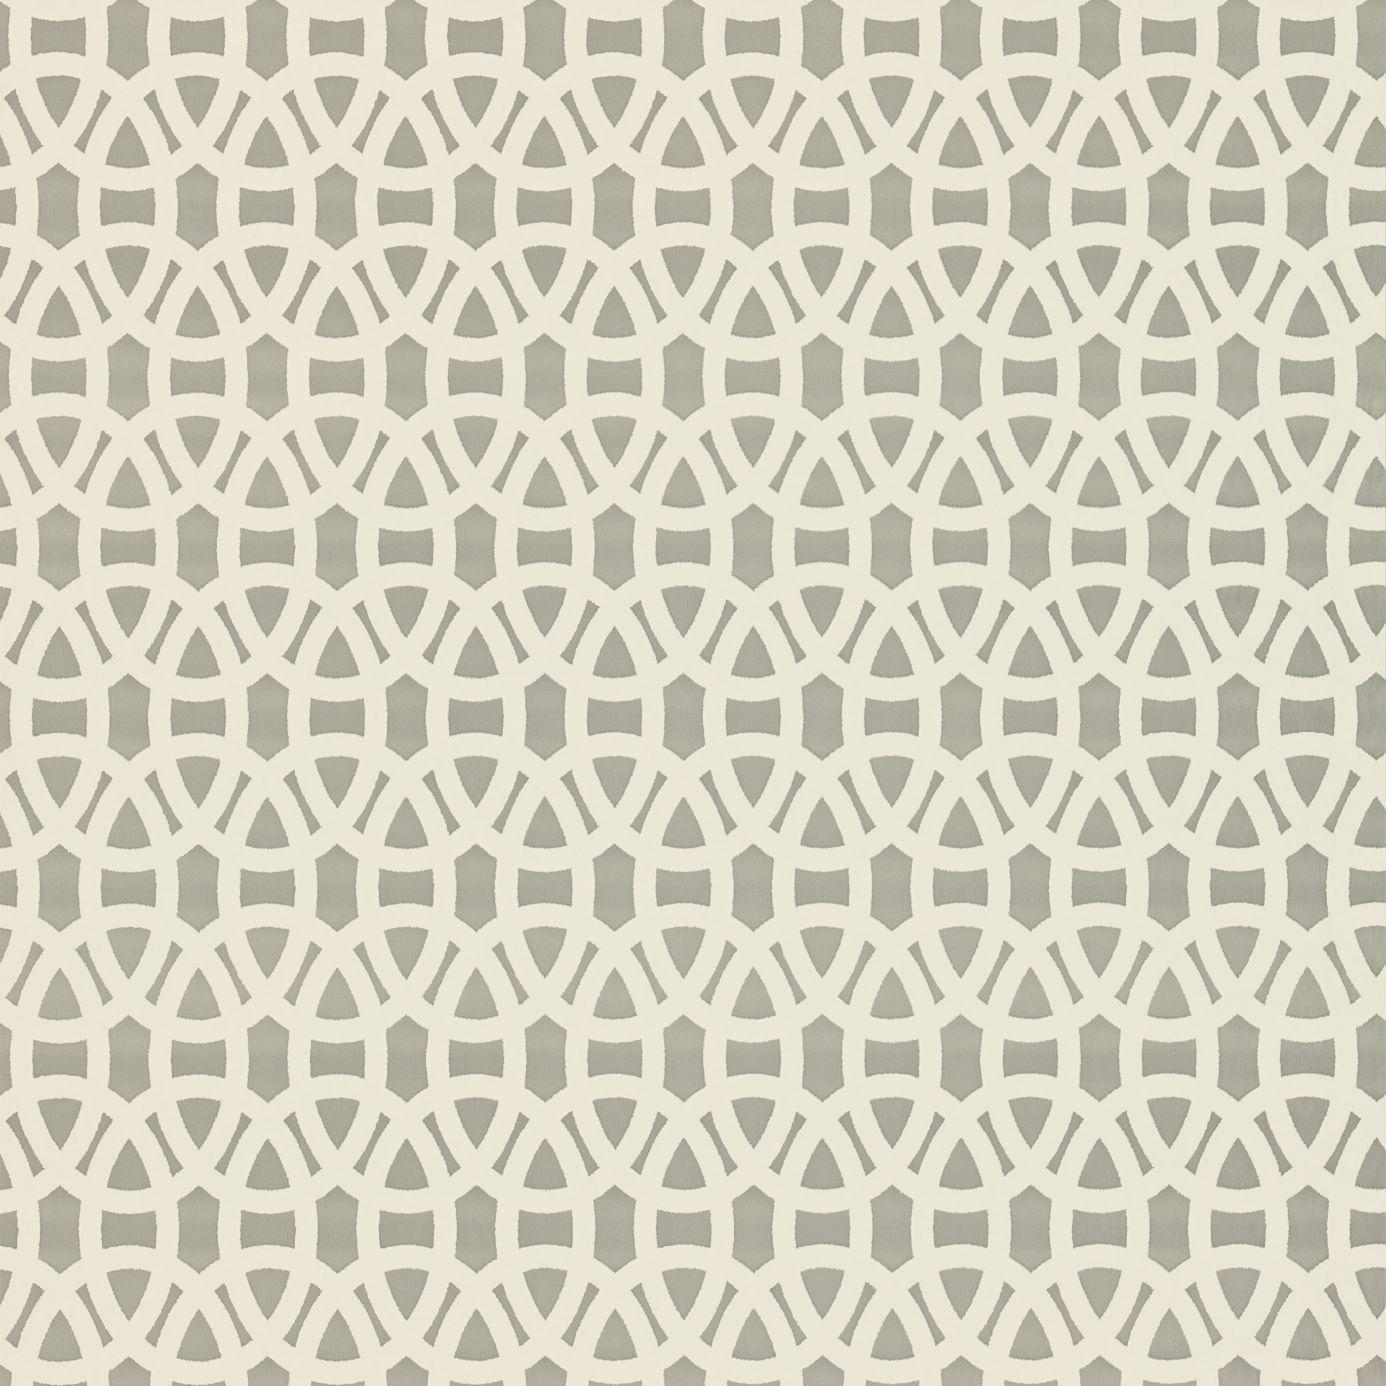 SCION Fabric and Wallpaper. Ceramic impression?. Scion